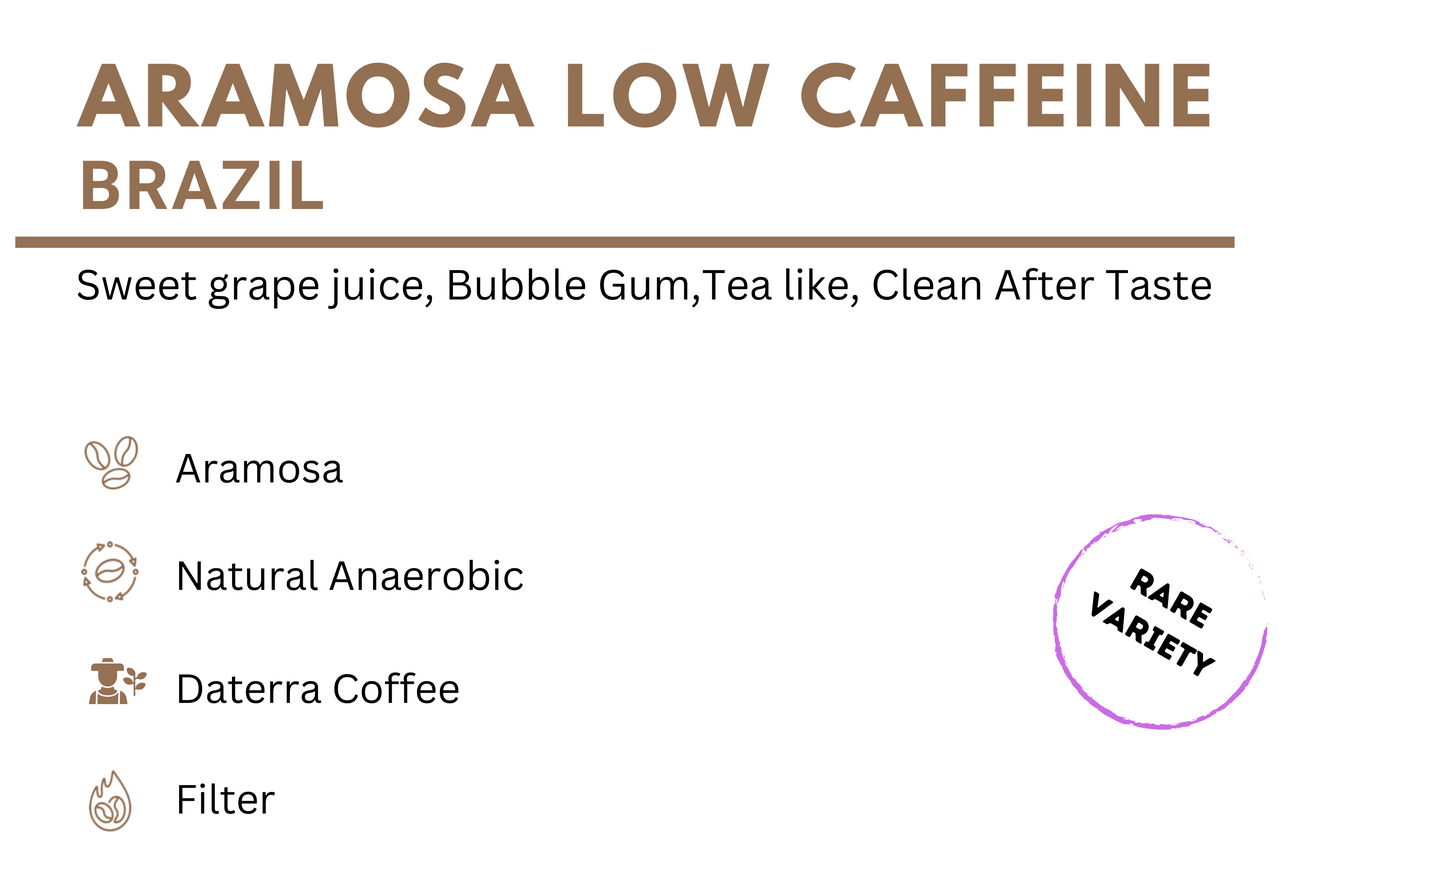 Aramosa Low Caffeine - Brazil